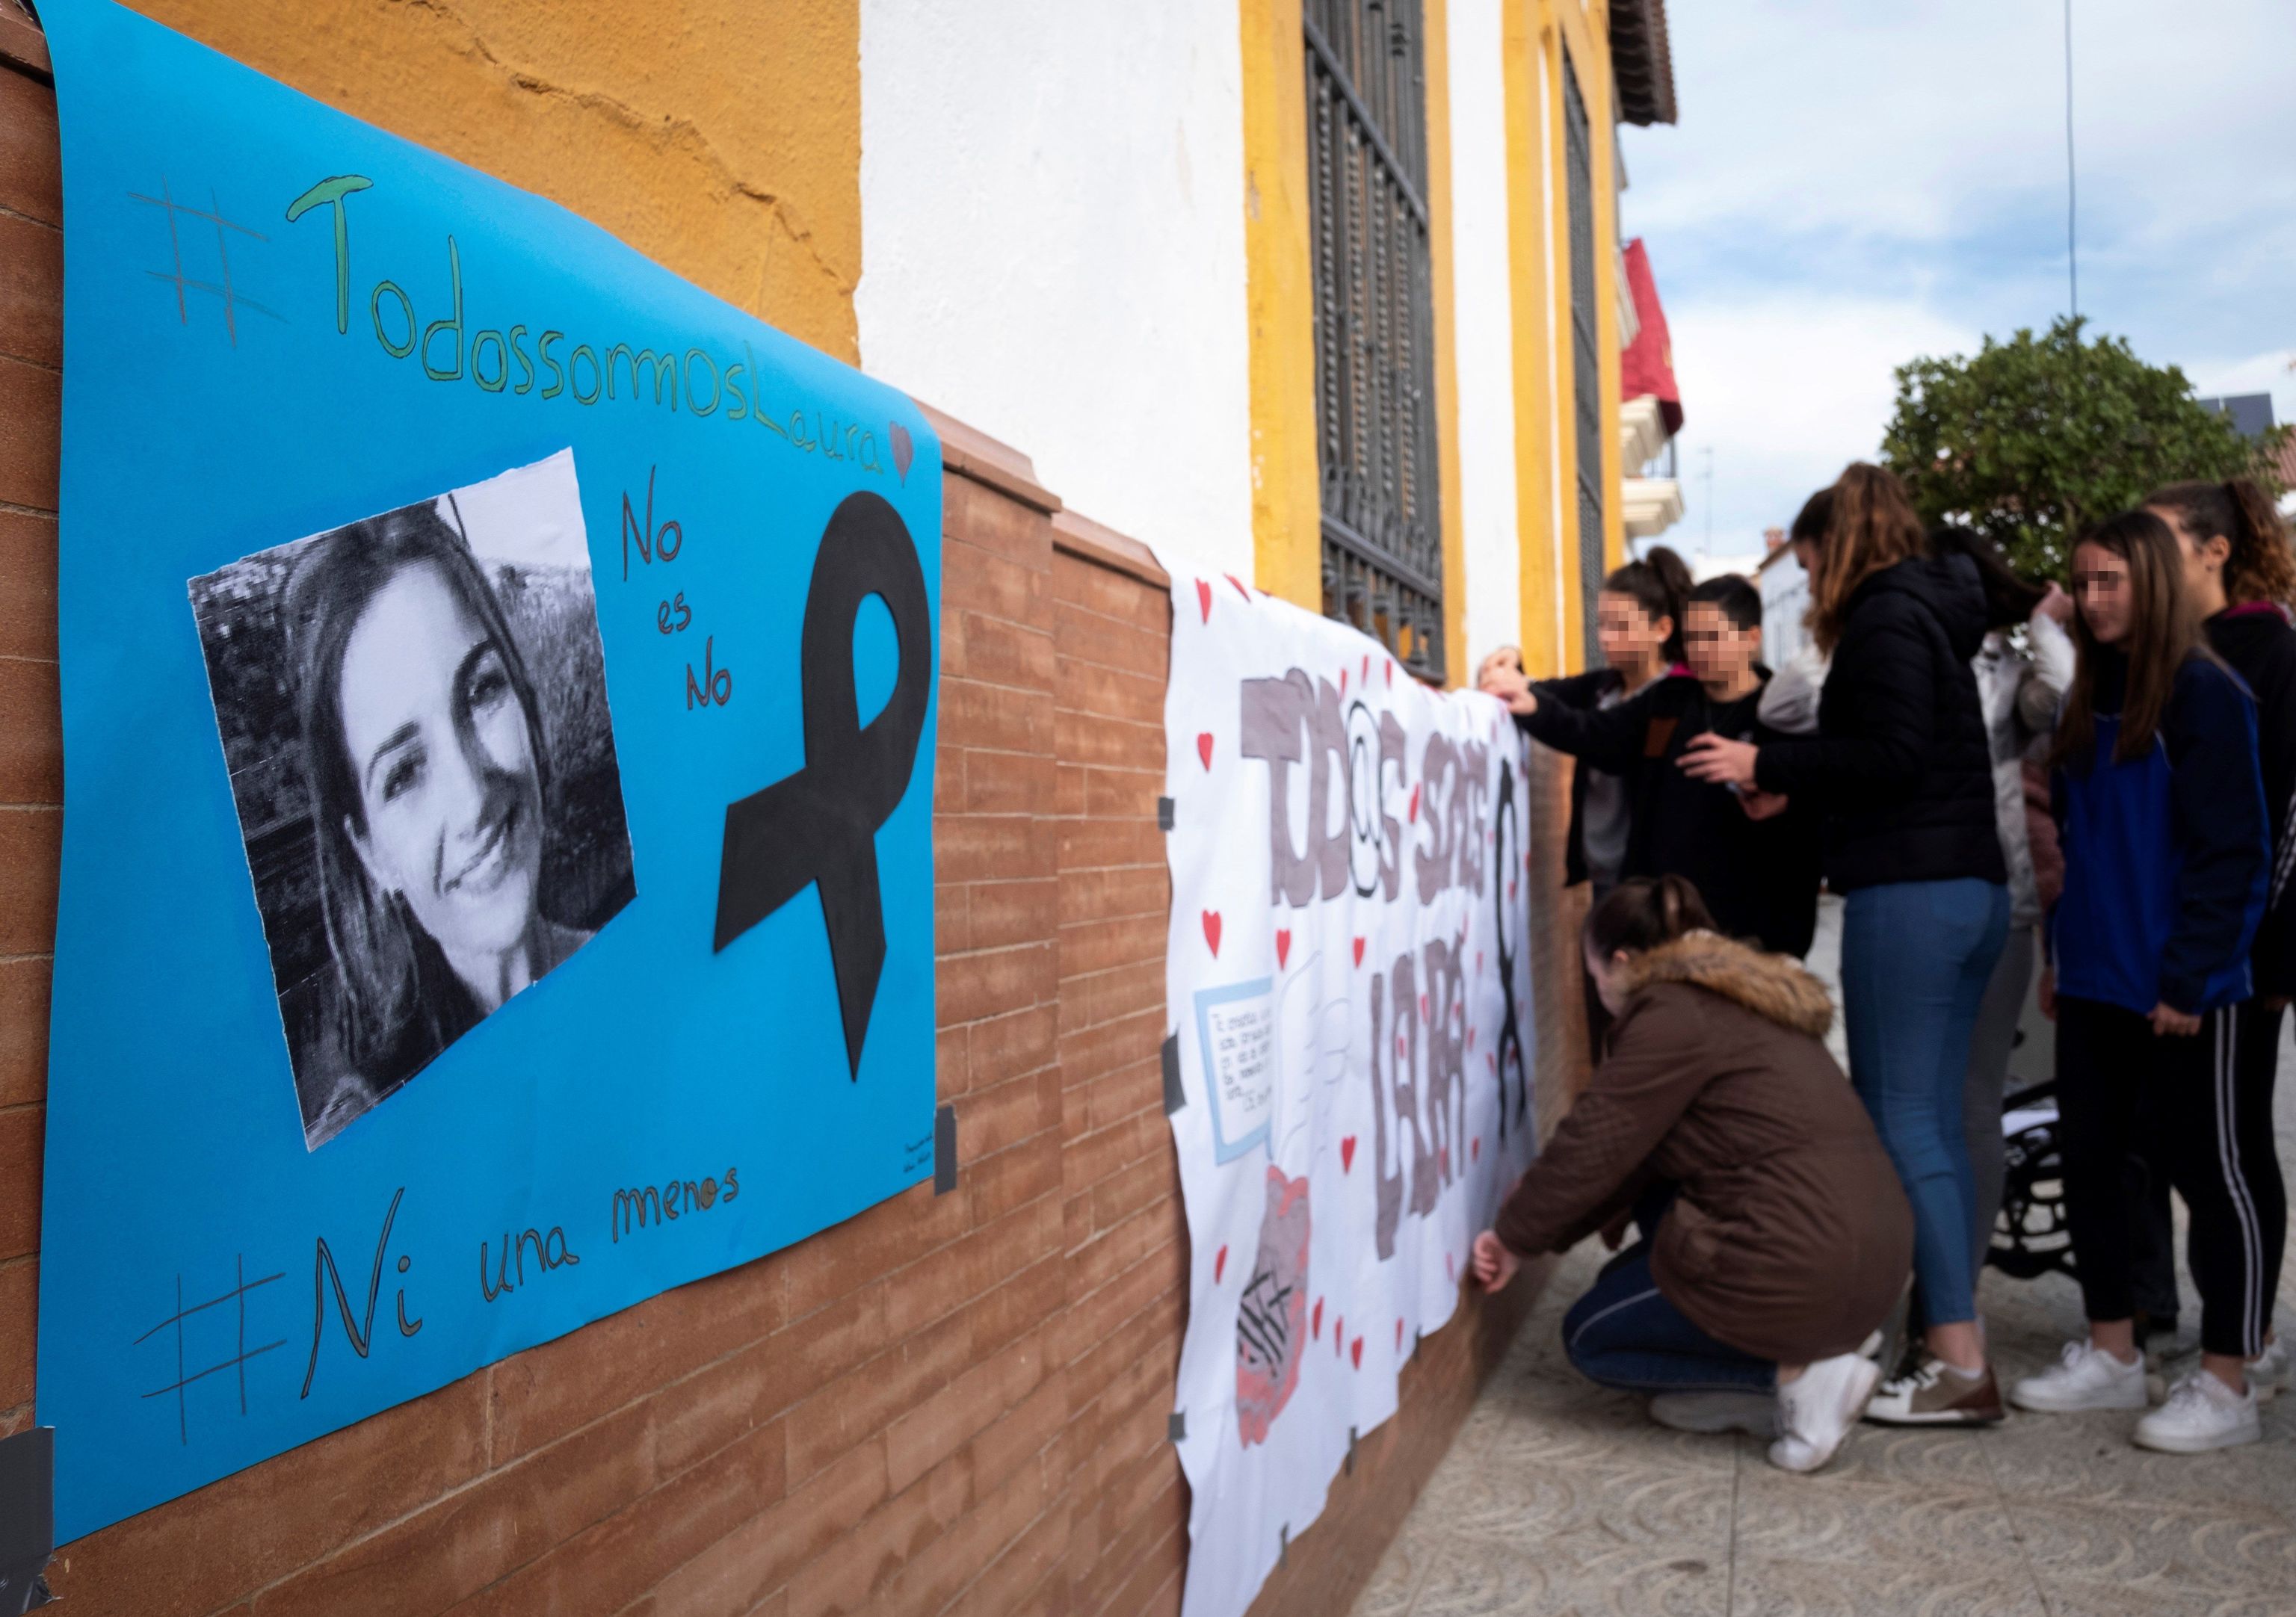 Un grupo de jvenes se concentra, das despus del crimen, en un instituto de Zalamea (Huelva) para condenar el asesinato de Laura Luelmo.